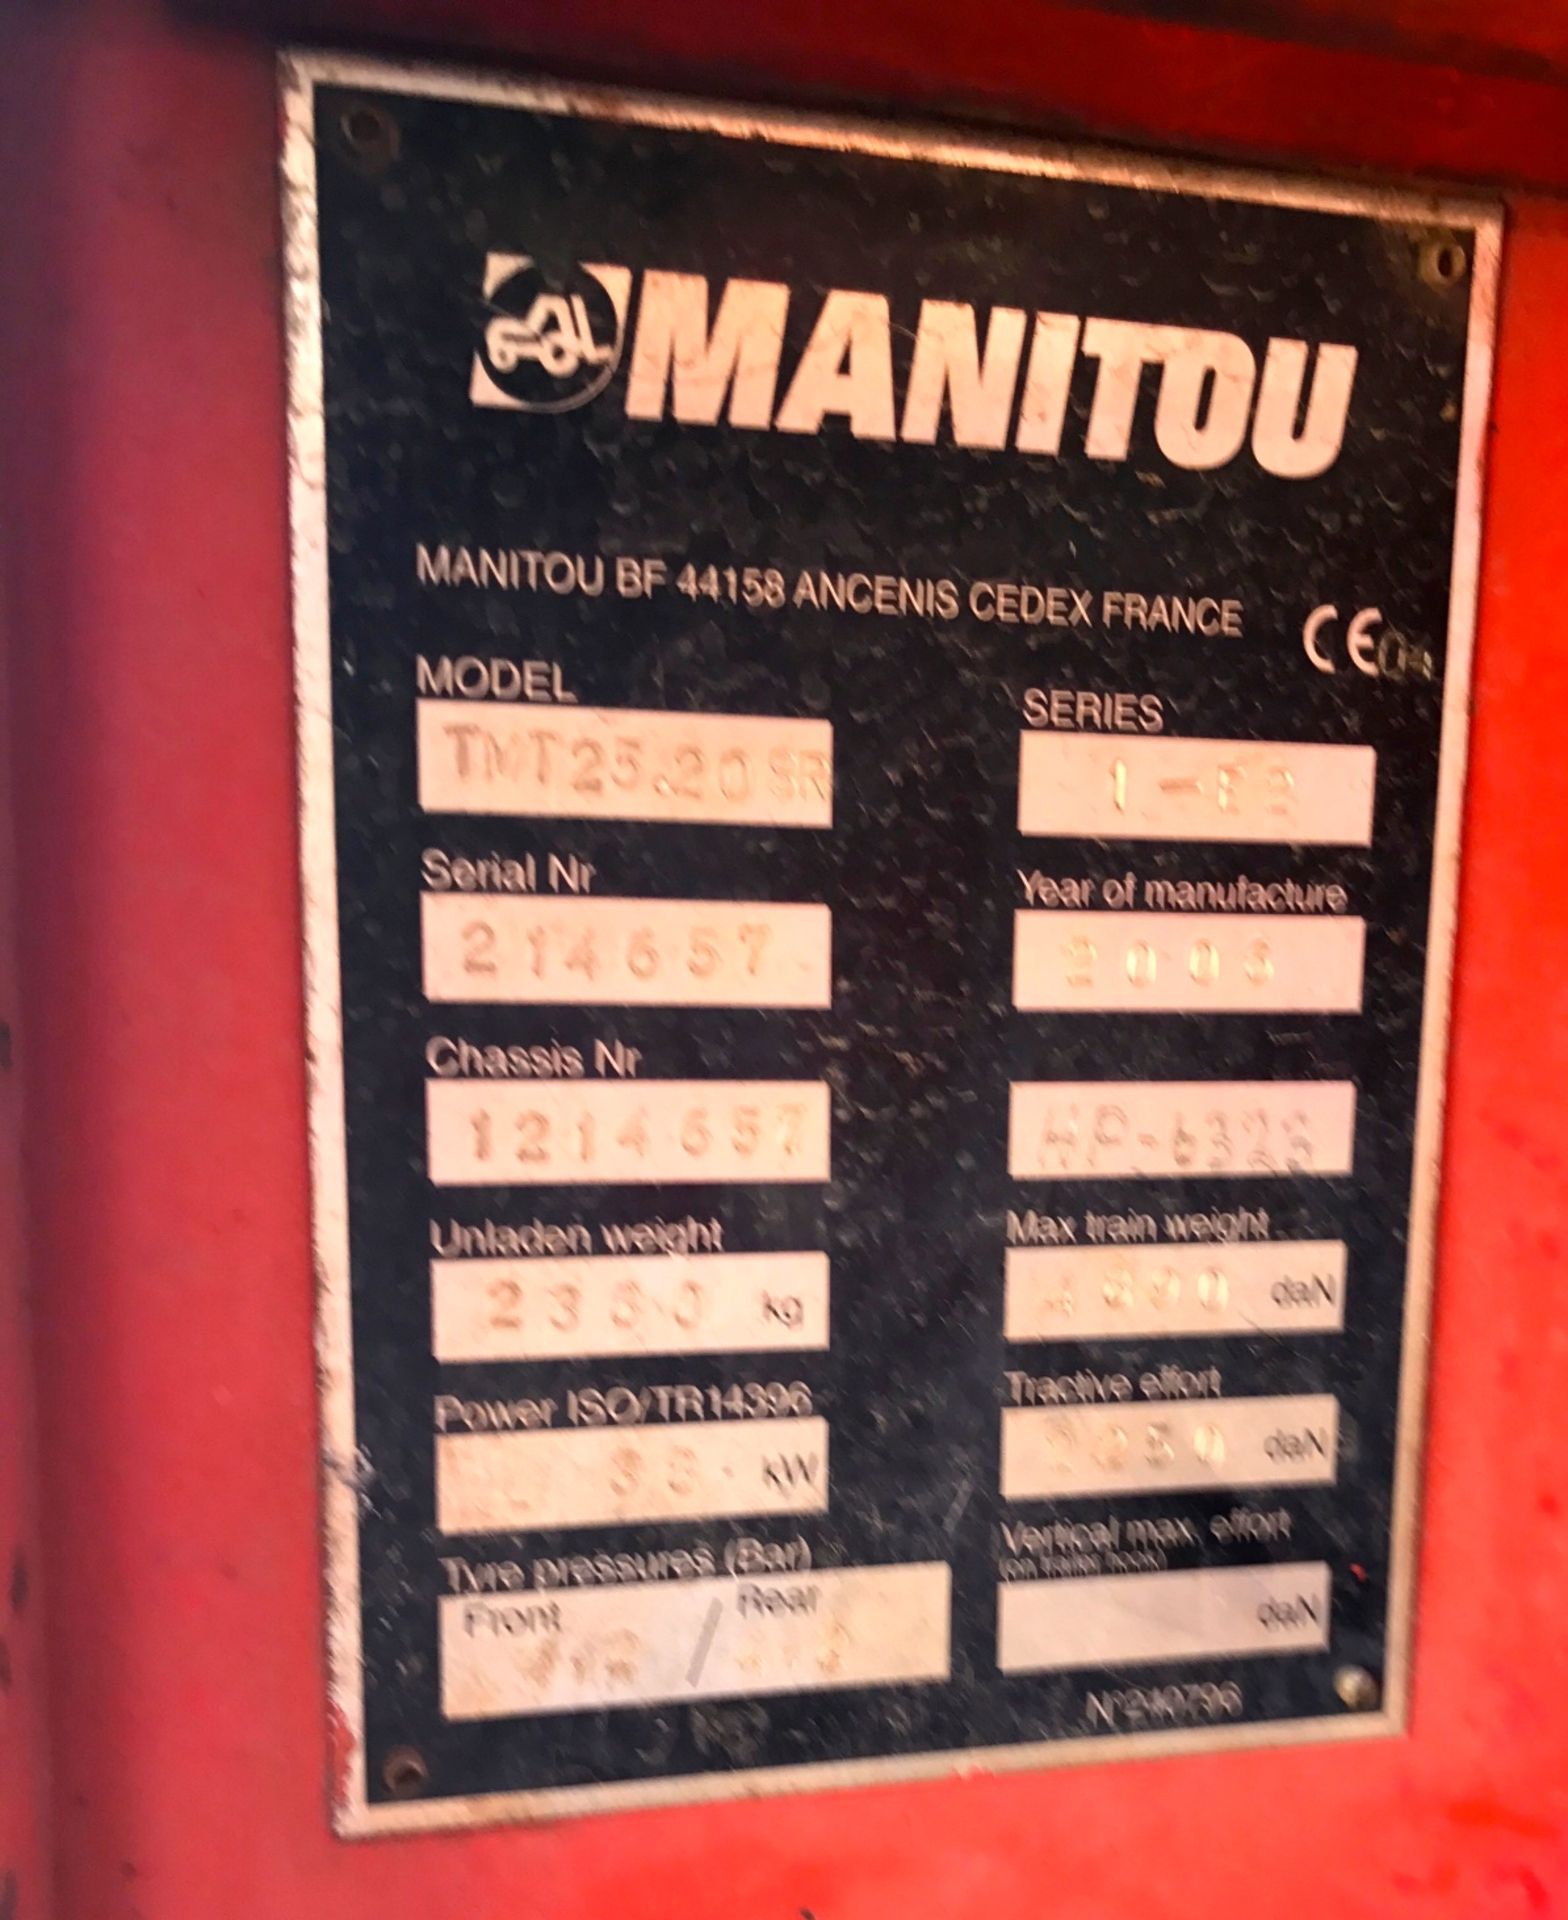 2008 MANITOU TMT25-20 SR FORKLIFT - (XFC354GP / 1214657) - Image 4 of 4